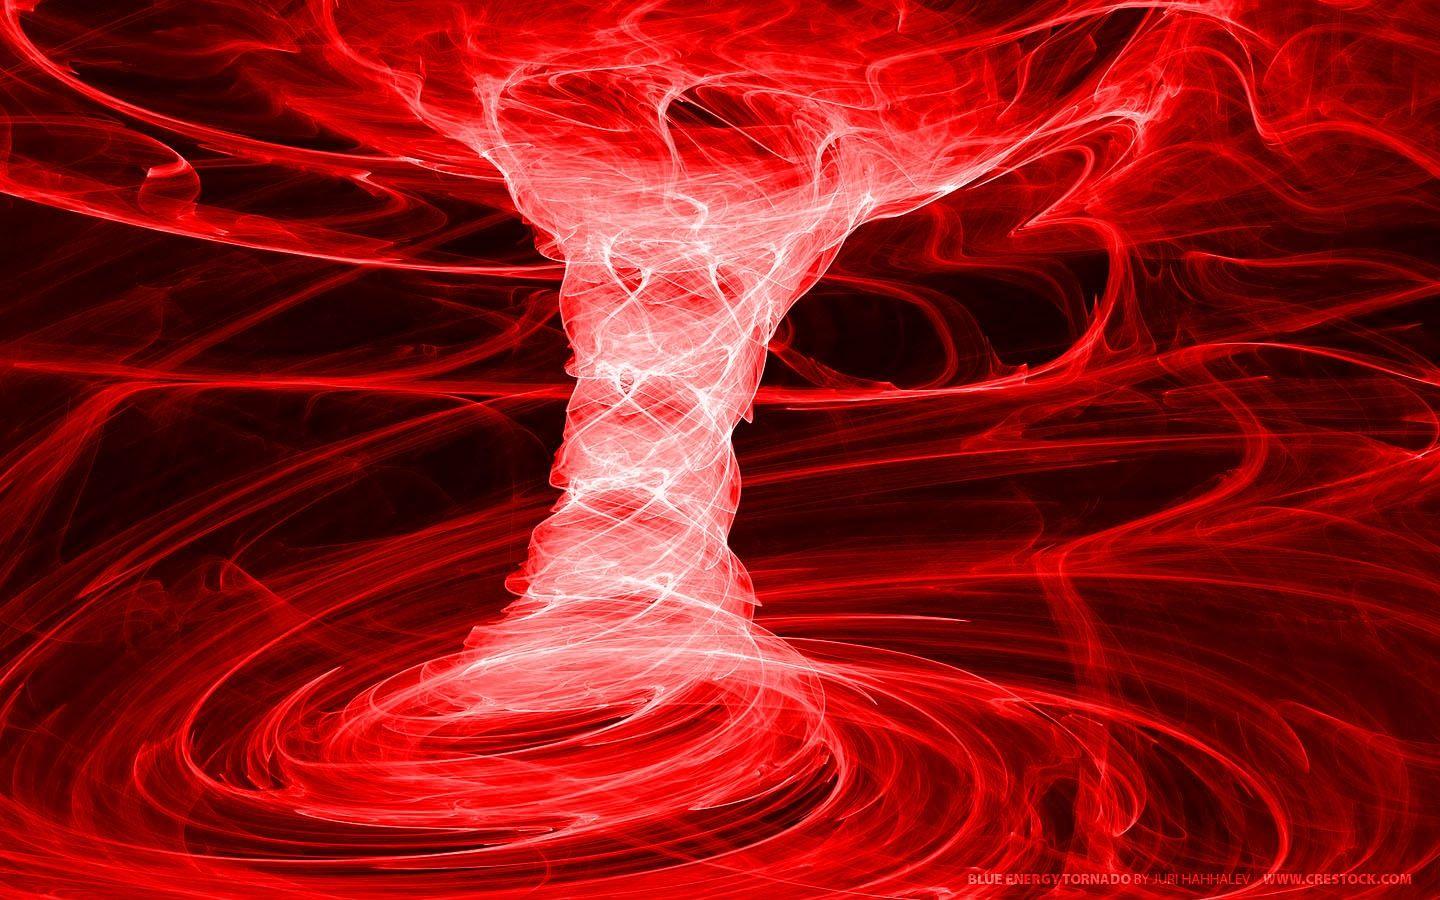 1440x900 Tải xuống miễn phí 14 Tornado And Lightning Wallpaper Red Tornado